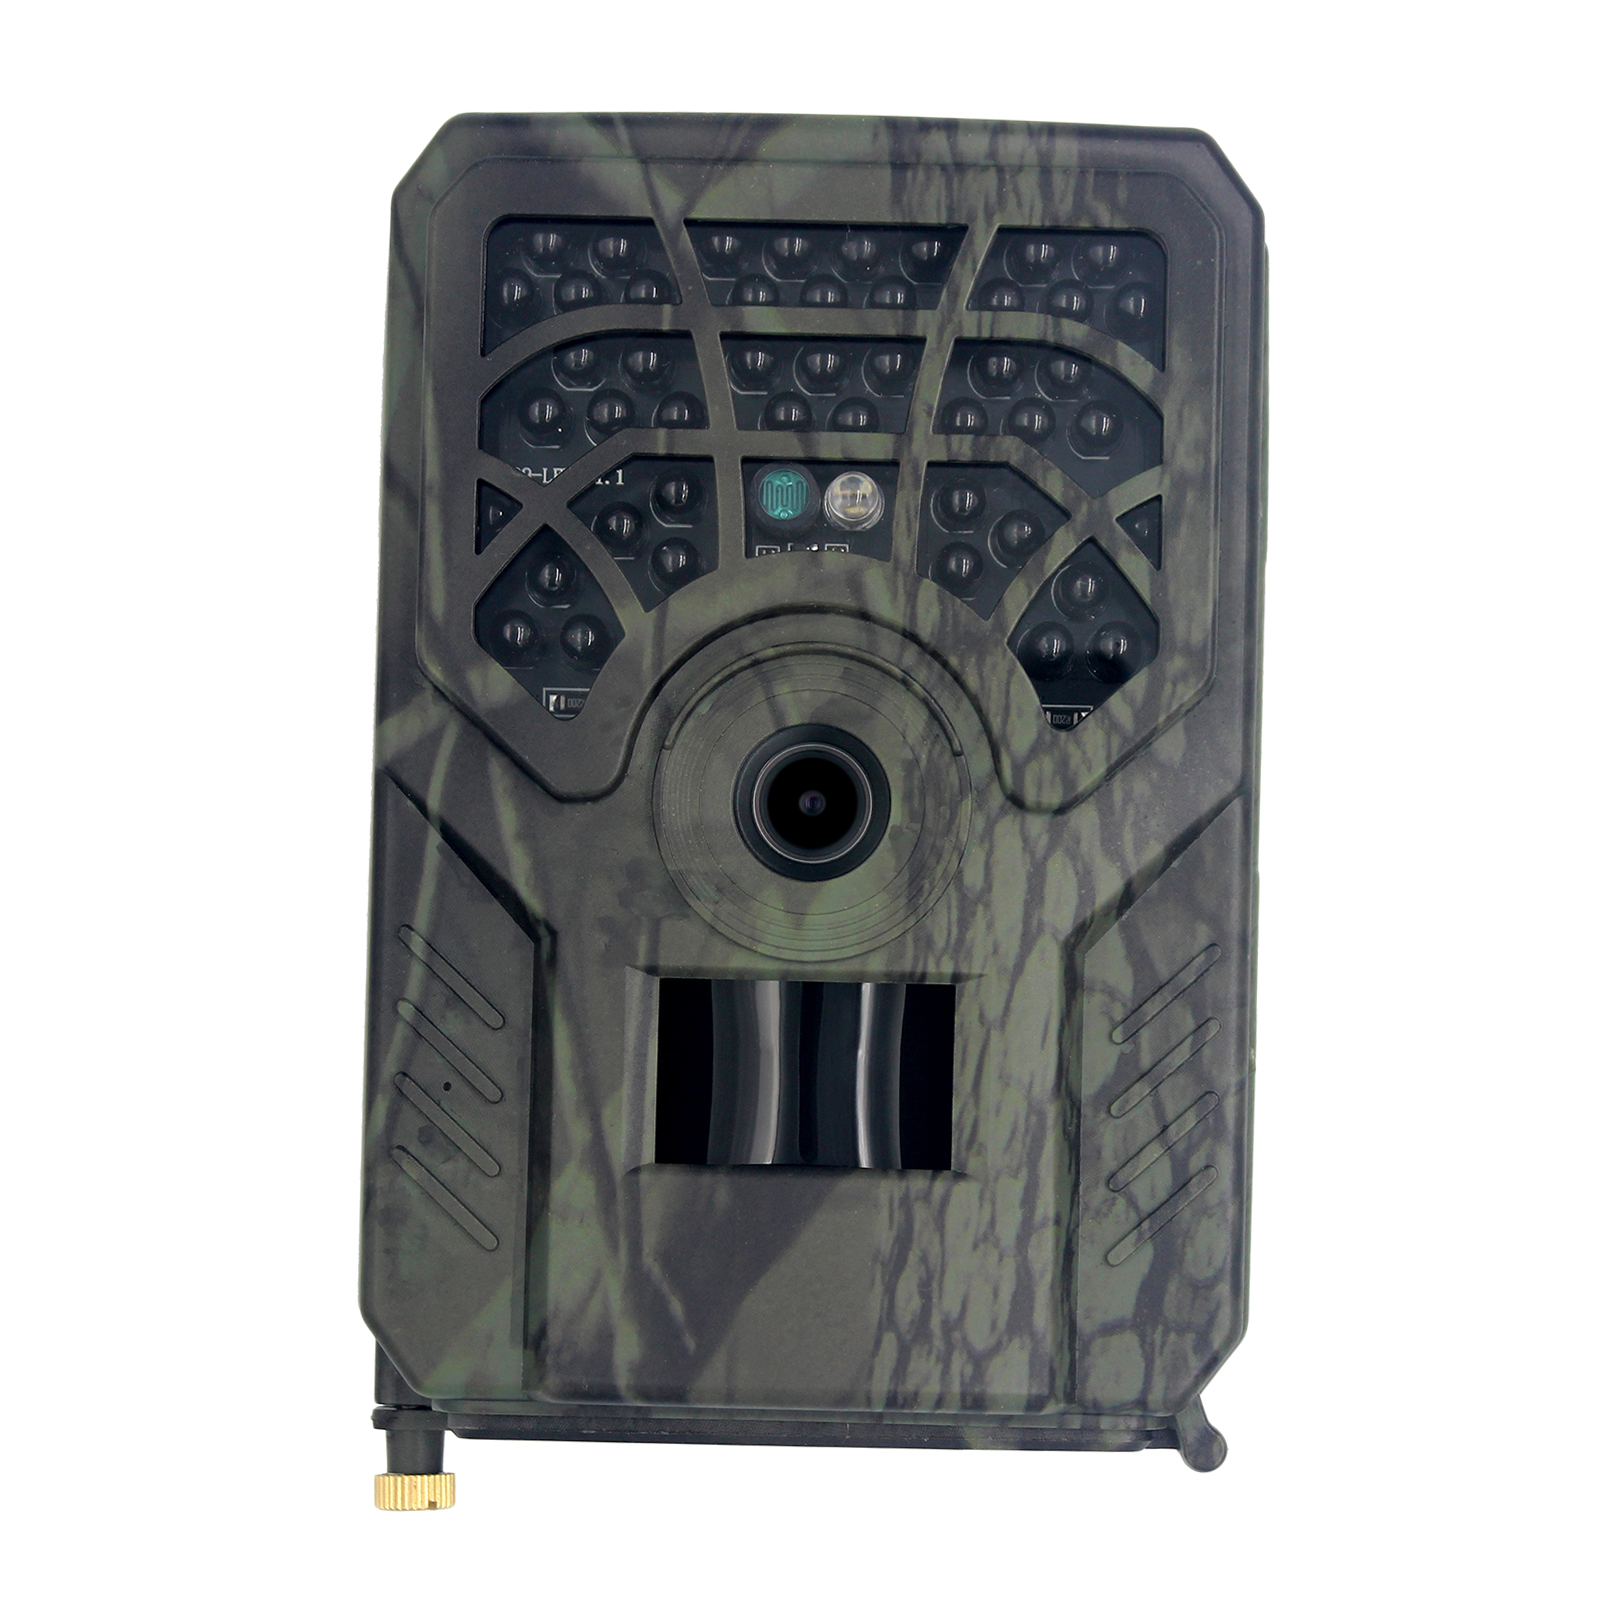 Aggiorna la videocamera PR-300c Trail Camera 720p Vision Night Outdoor Cavalca di sicurezza con IP54 Waterproof Wildlife a 120 ° Line